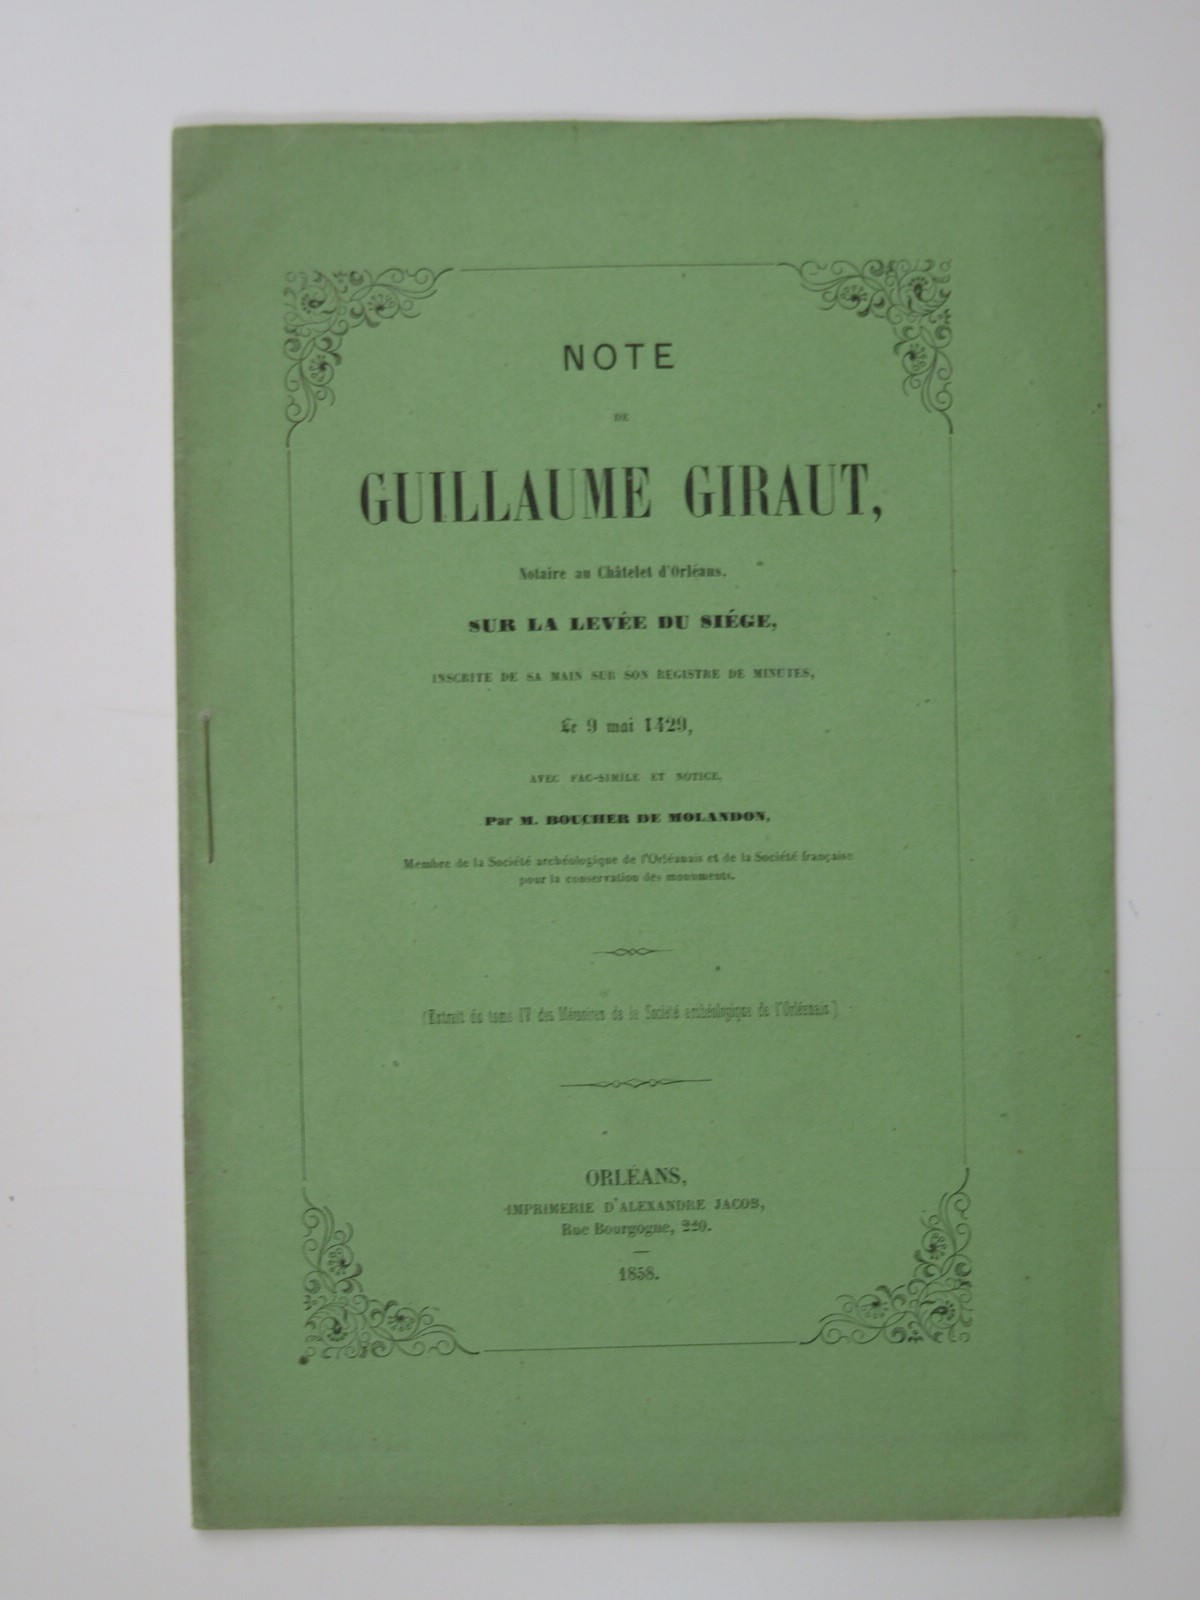 Boucher de molandon : Note de Guillaume Giraut sur la levée du siège